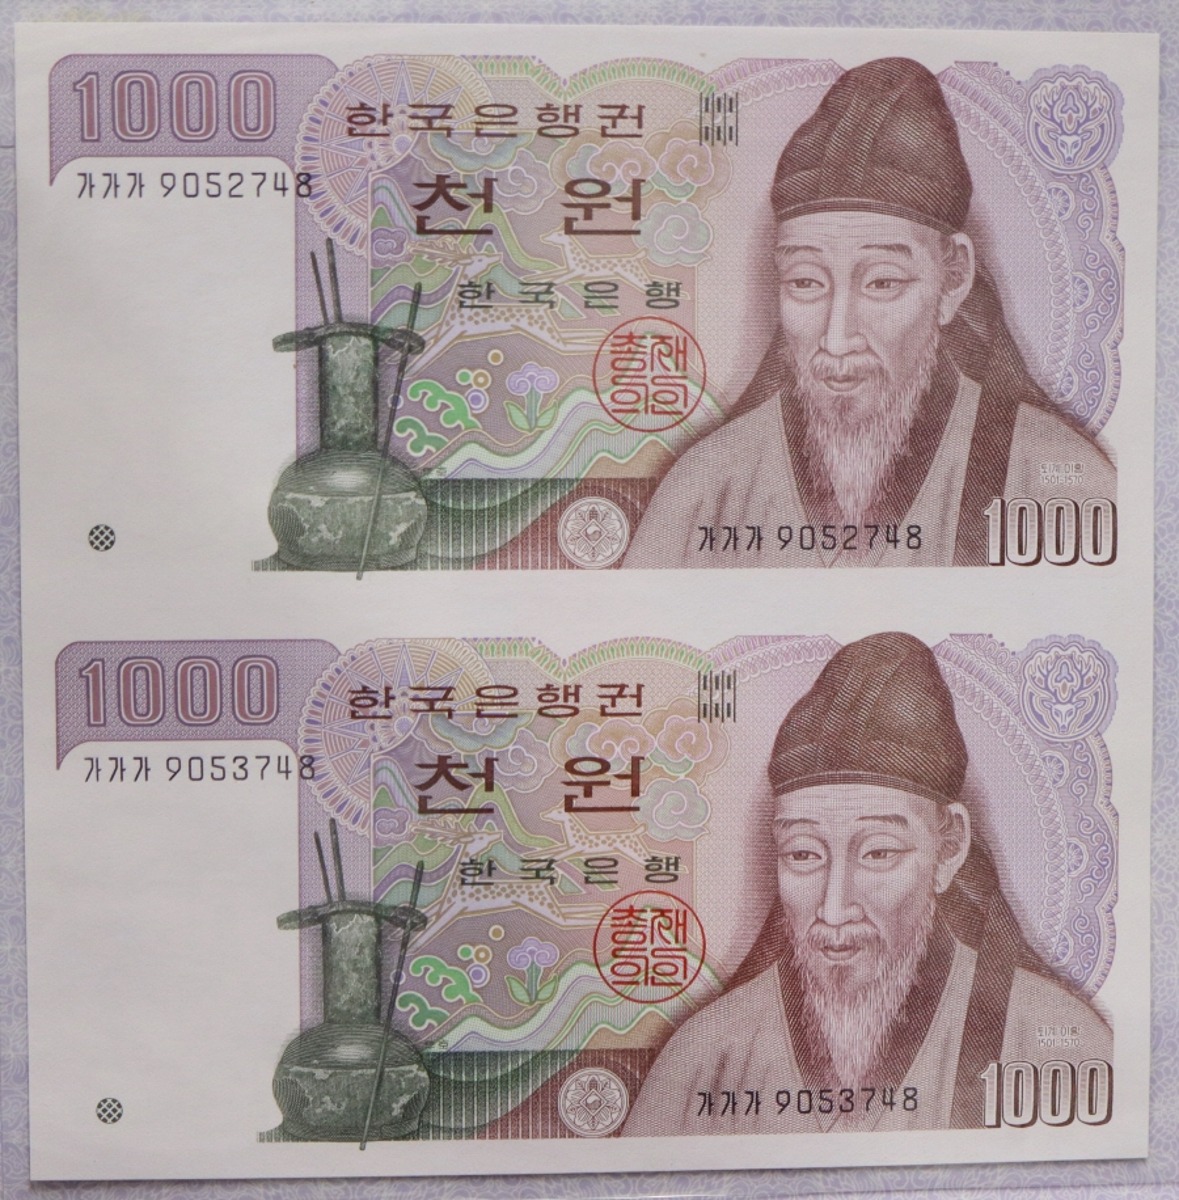 한국은행 나 1000원 2차 천원 2매 연결권 2001년 (판매 1회차 연결권)